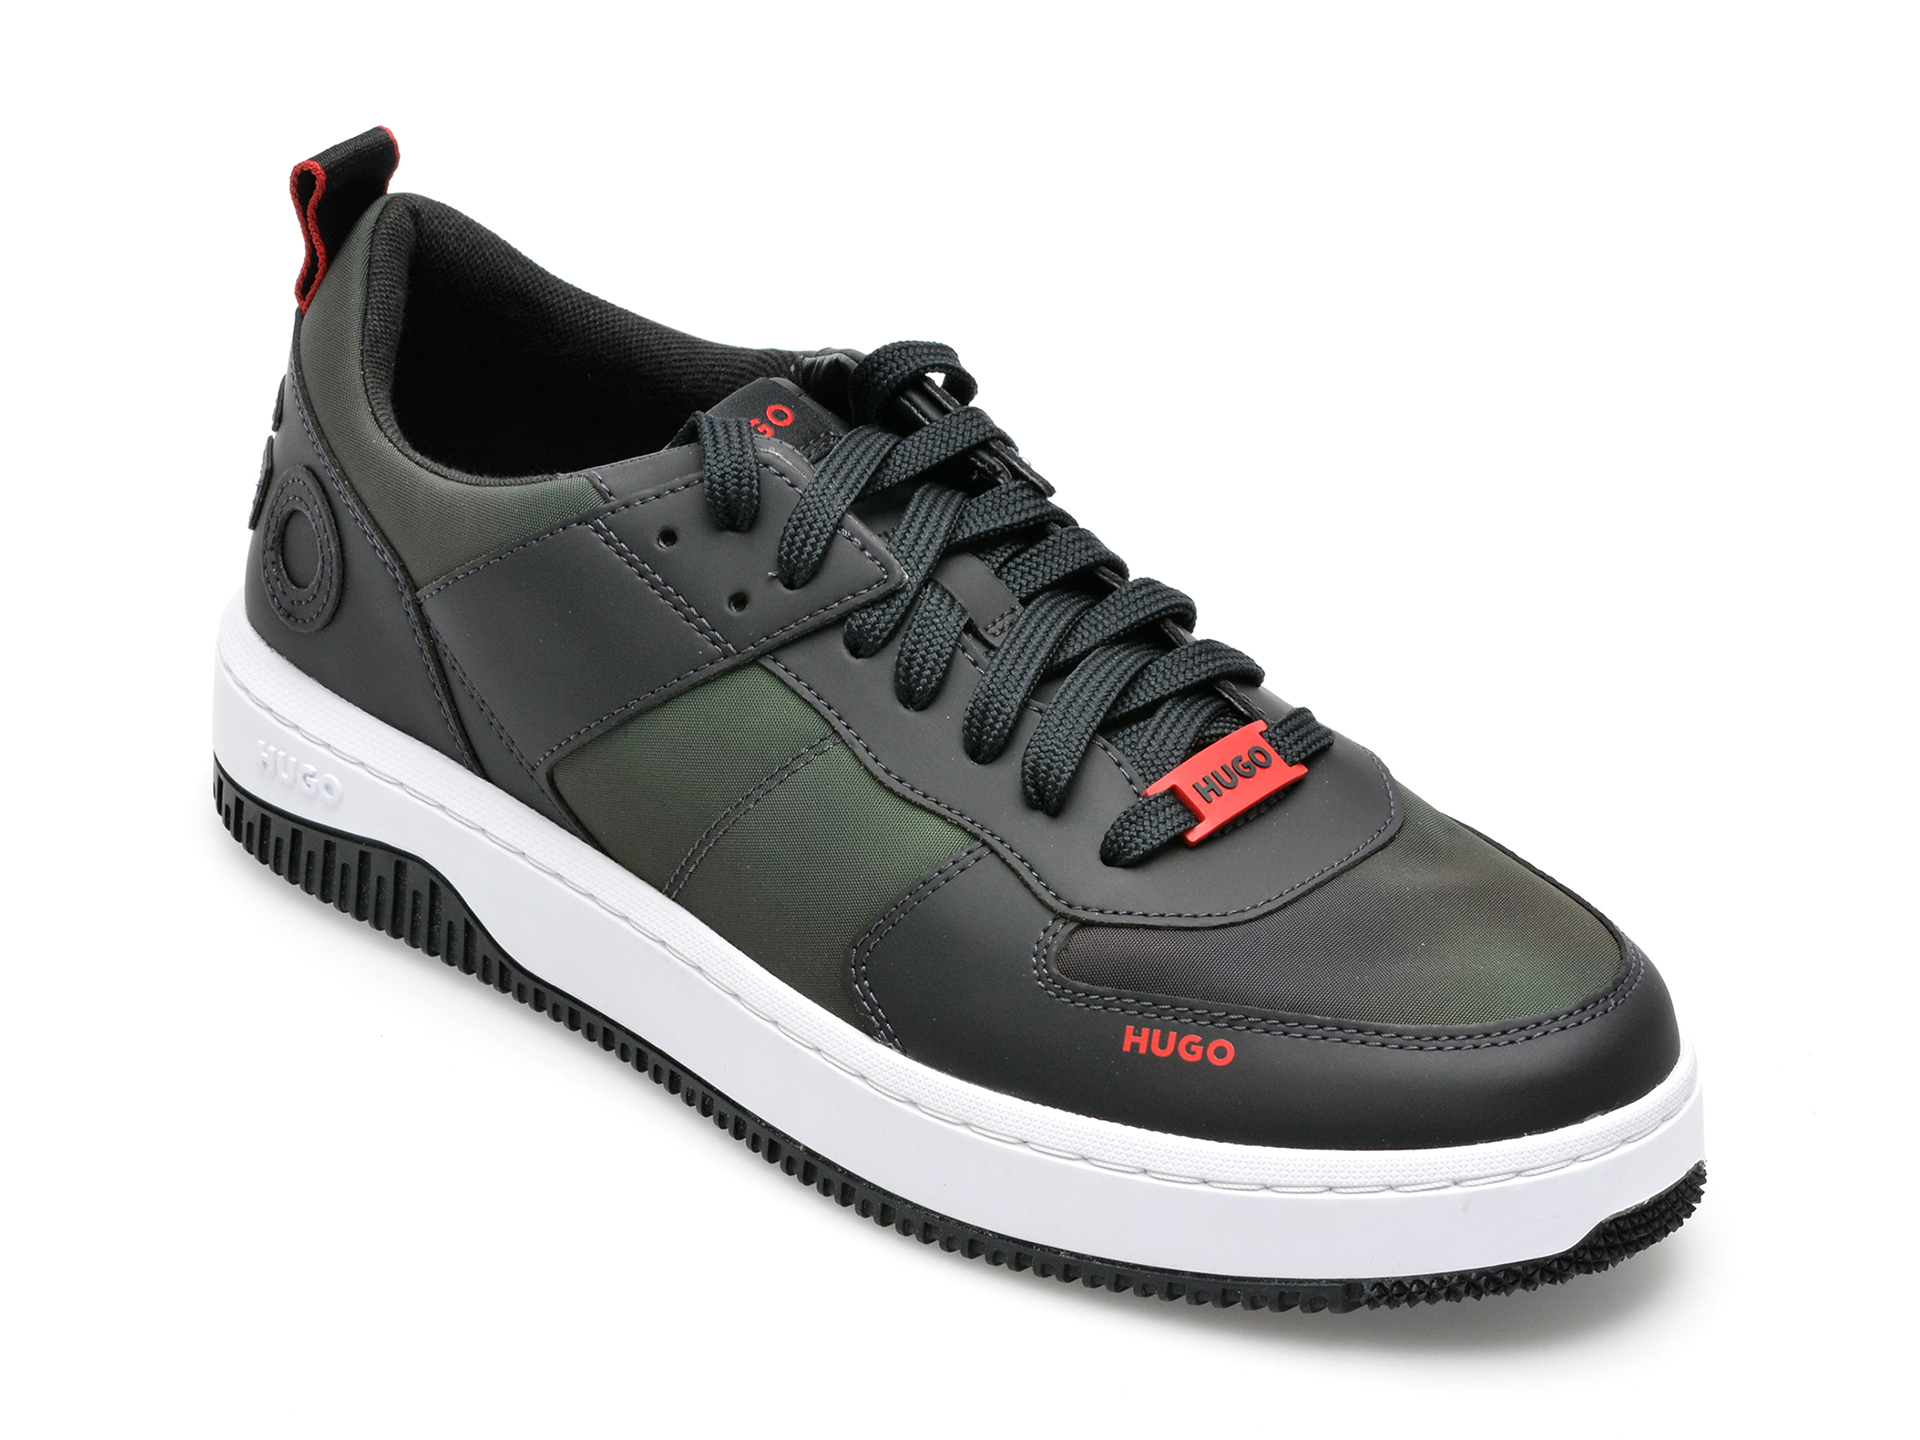 Pantofi sport HUGO kaki, 3118, din material textil BARBATI 2023-09-28